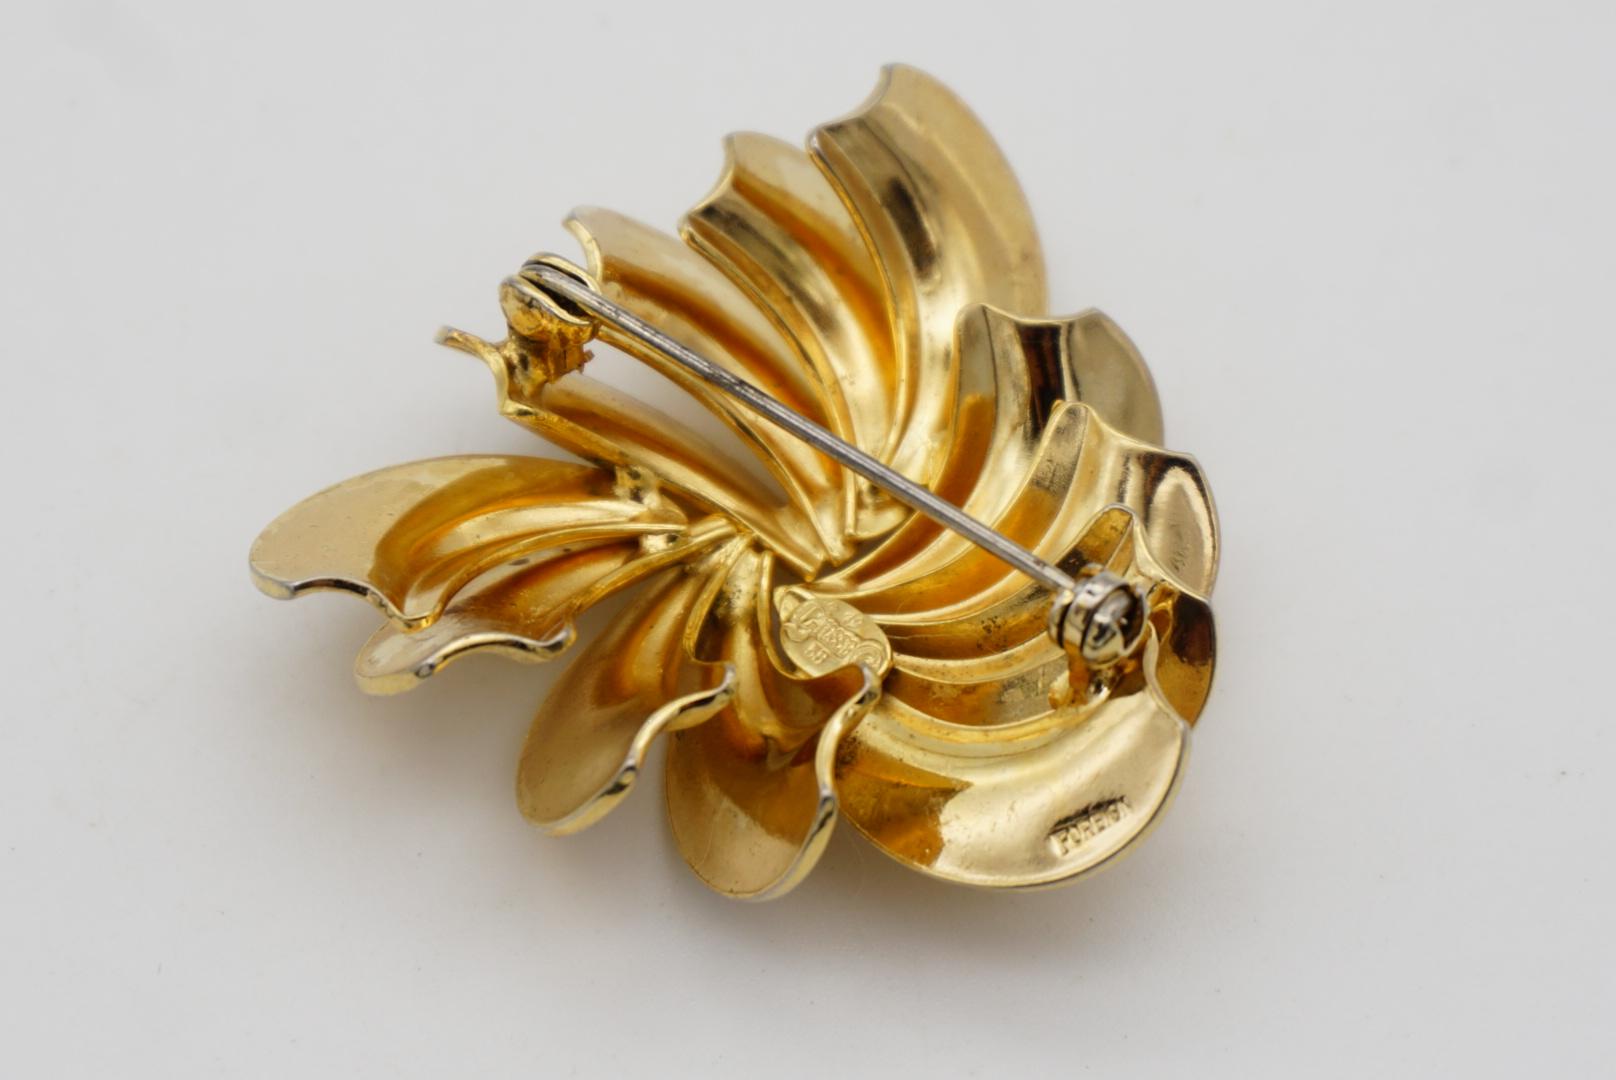 Christian Dior GROSSE 1958 Vintage Swirl Twist Fan Blade Triangle Gold Brooch  For Sale 7